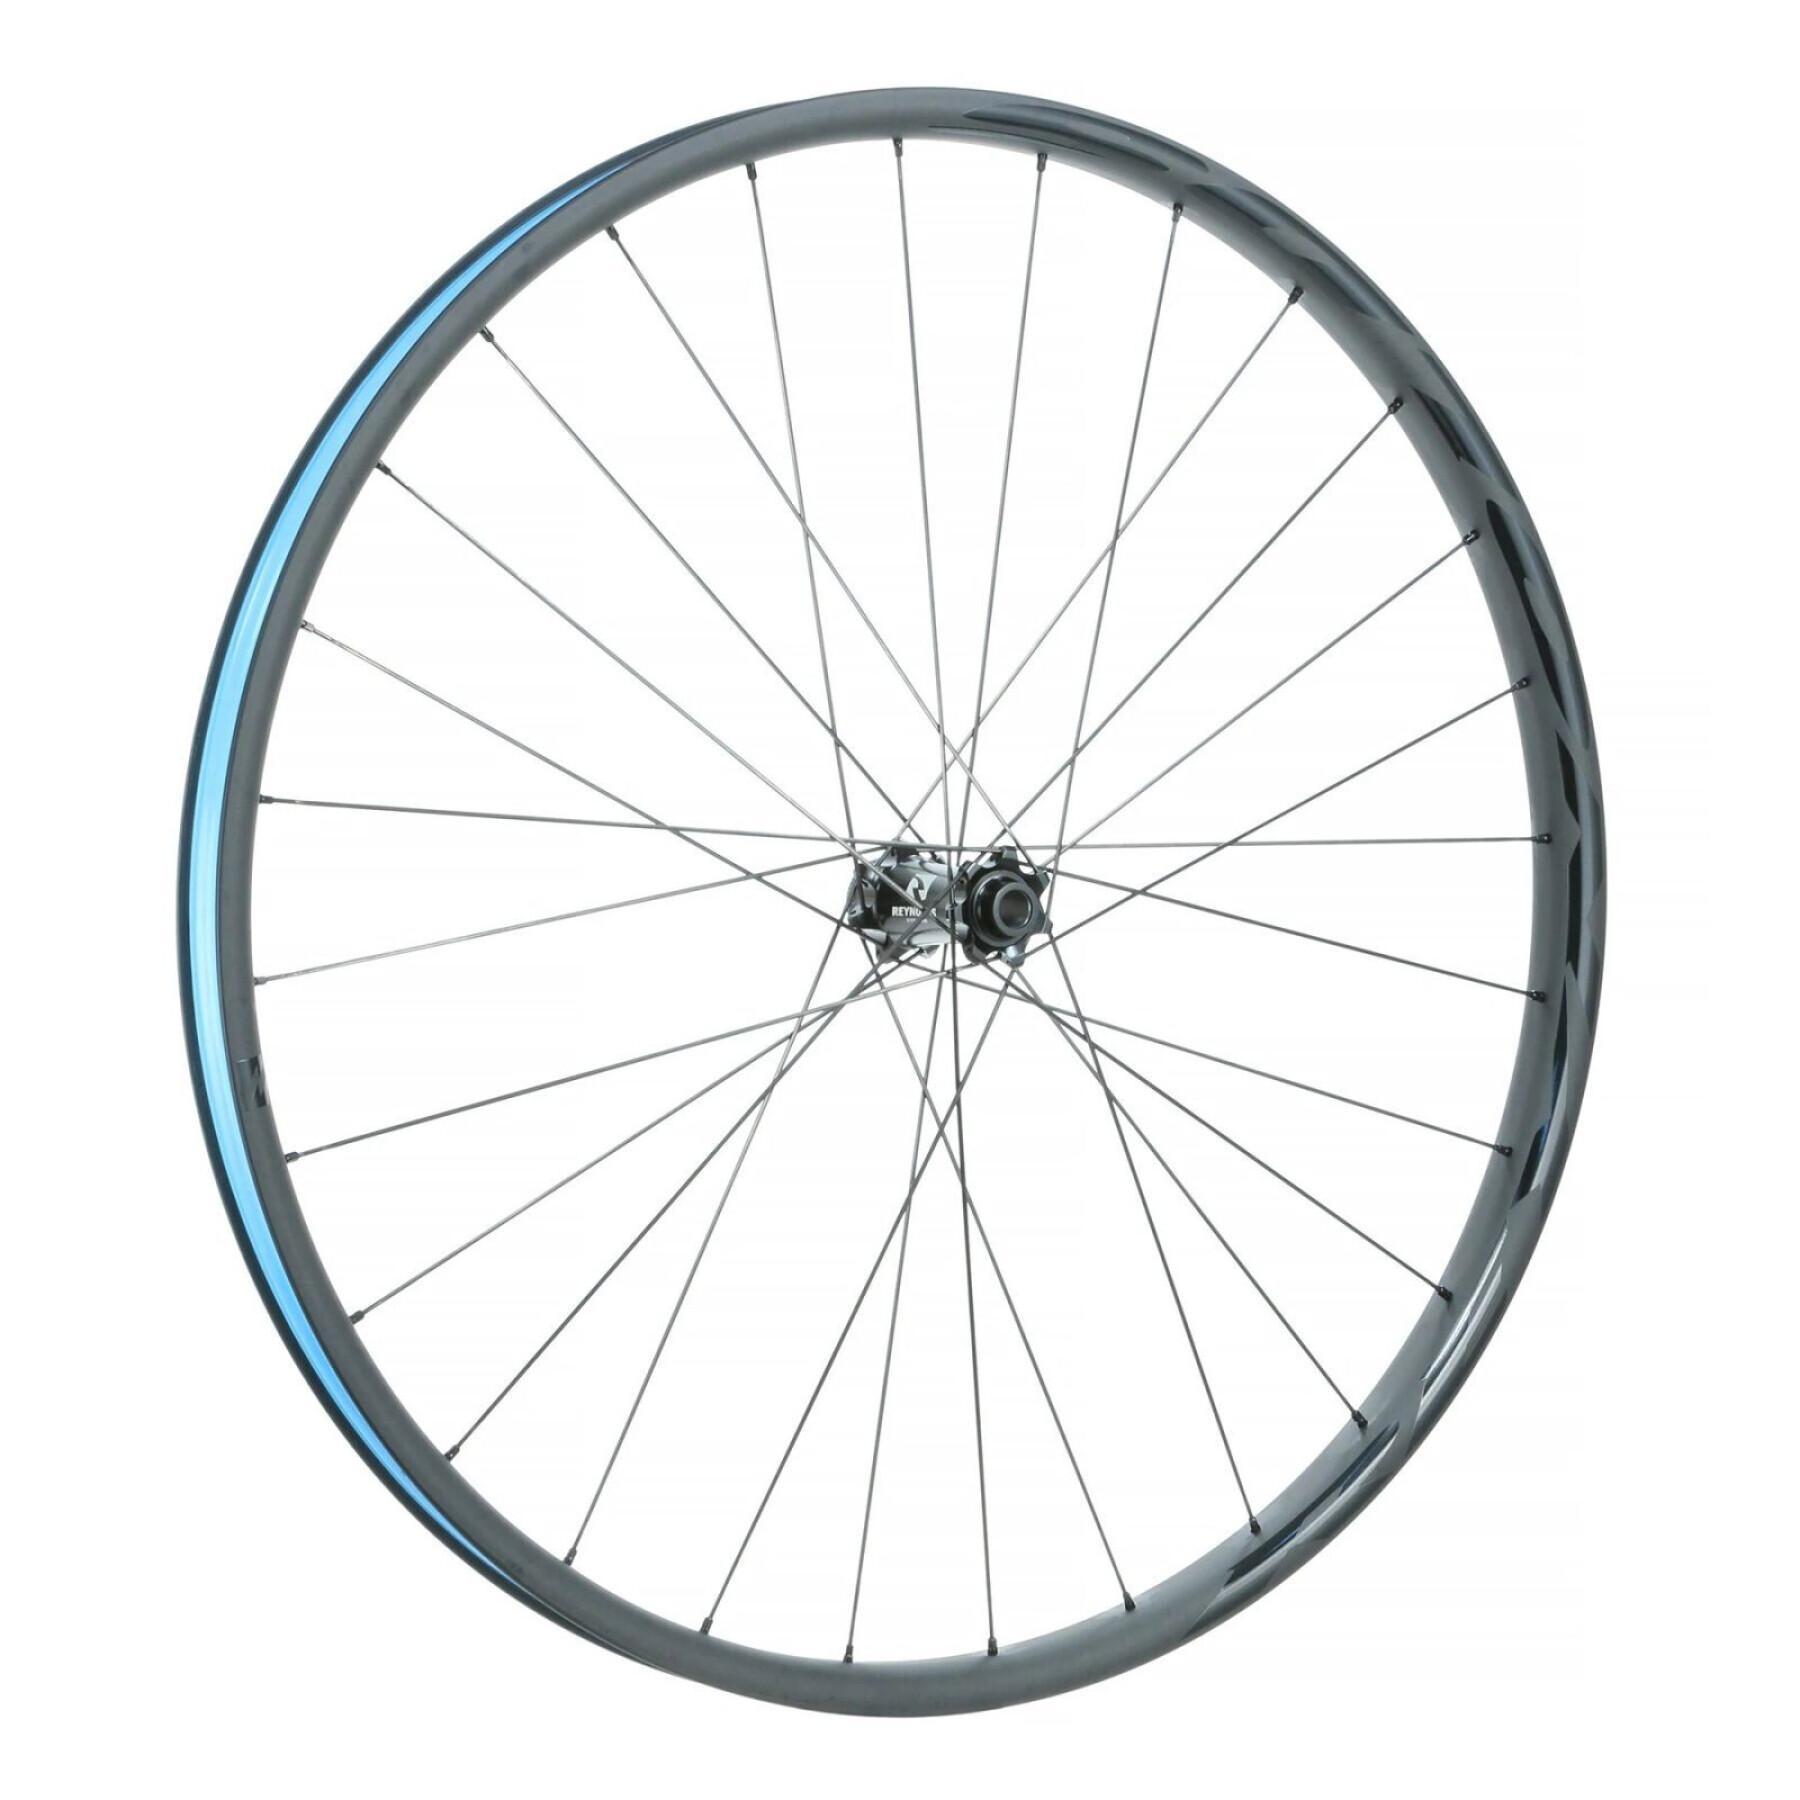 Pair of bicycle wheels Reynolds Blacklabel 327 Trail Pro 157 XD